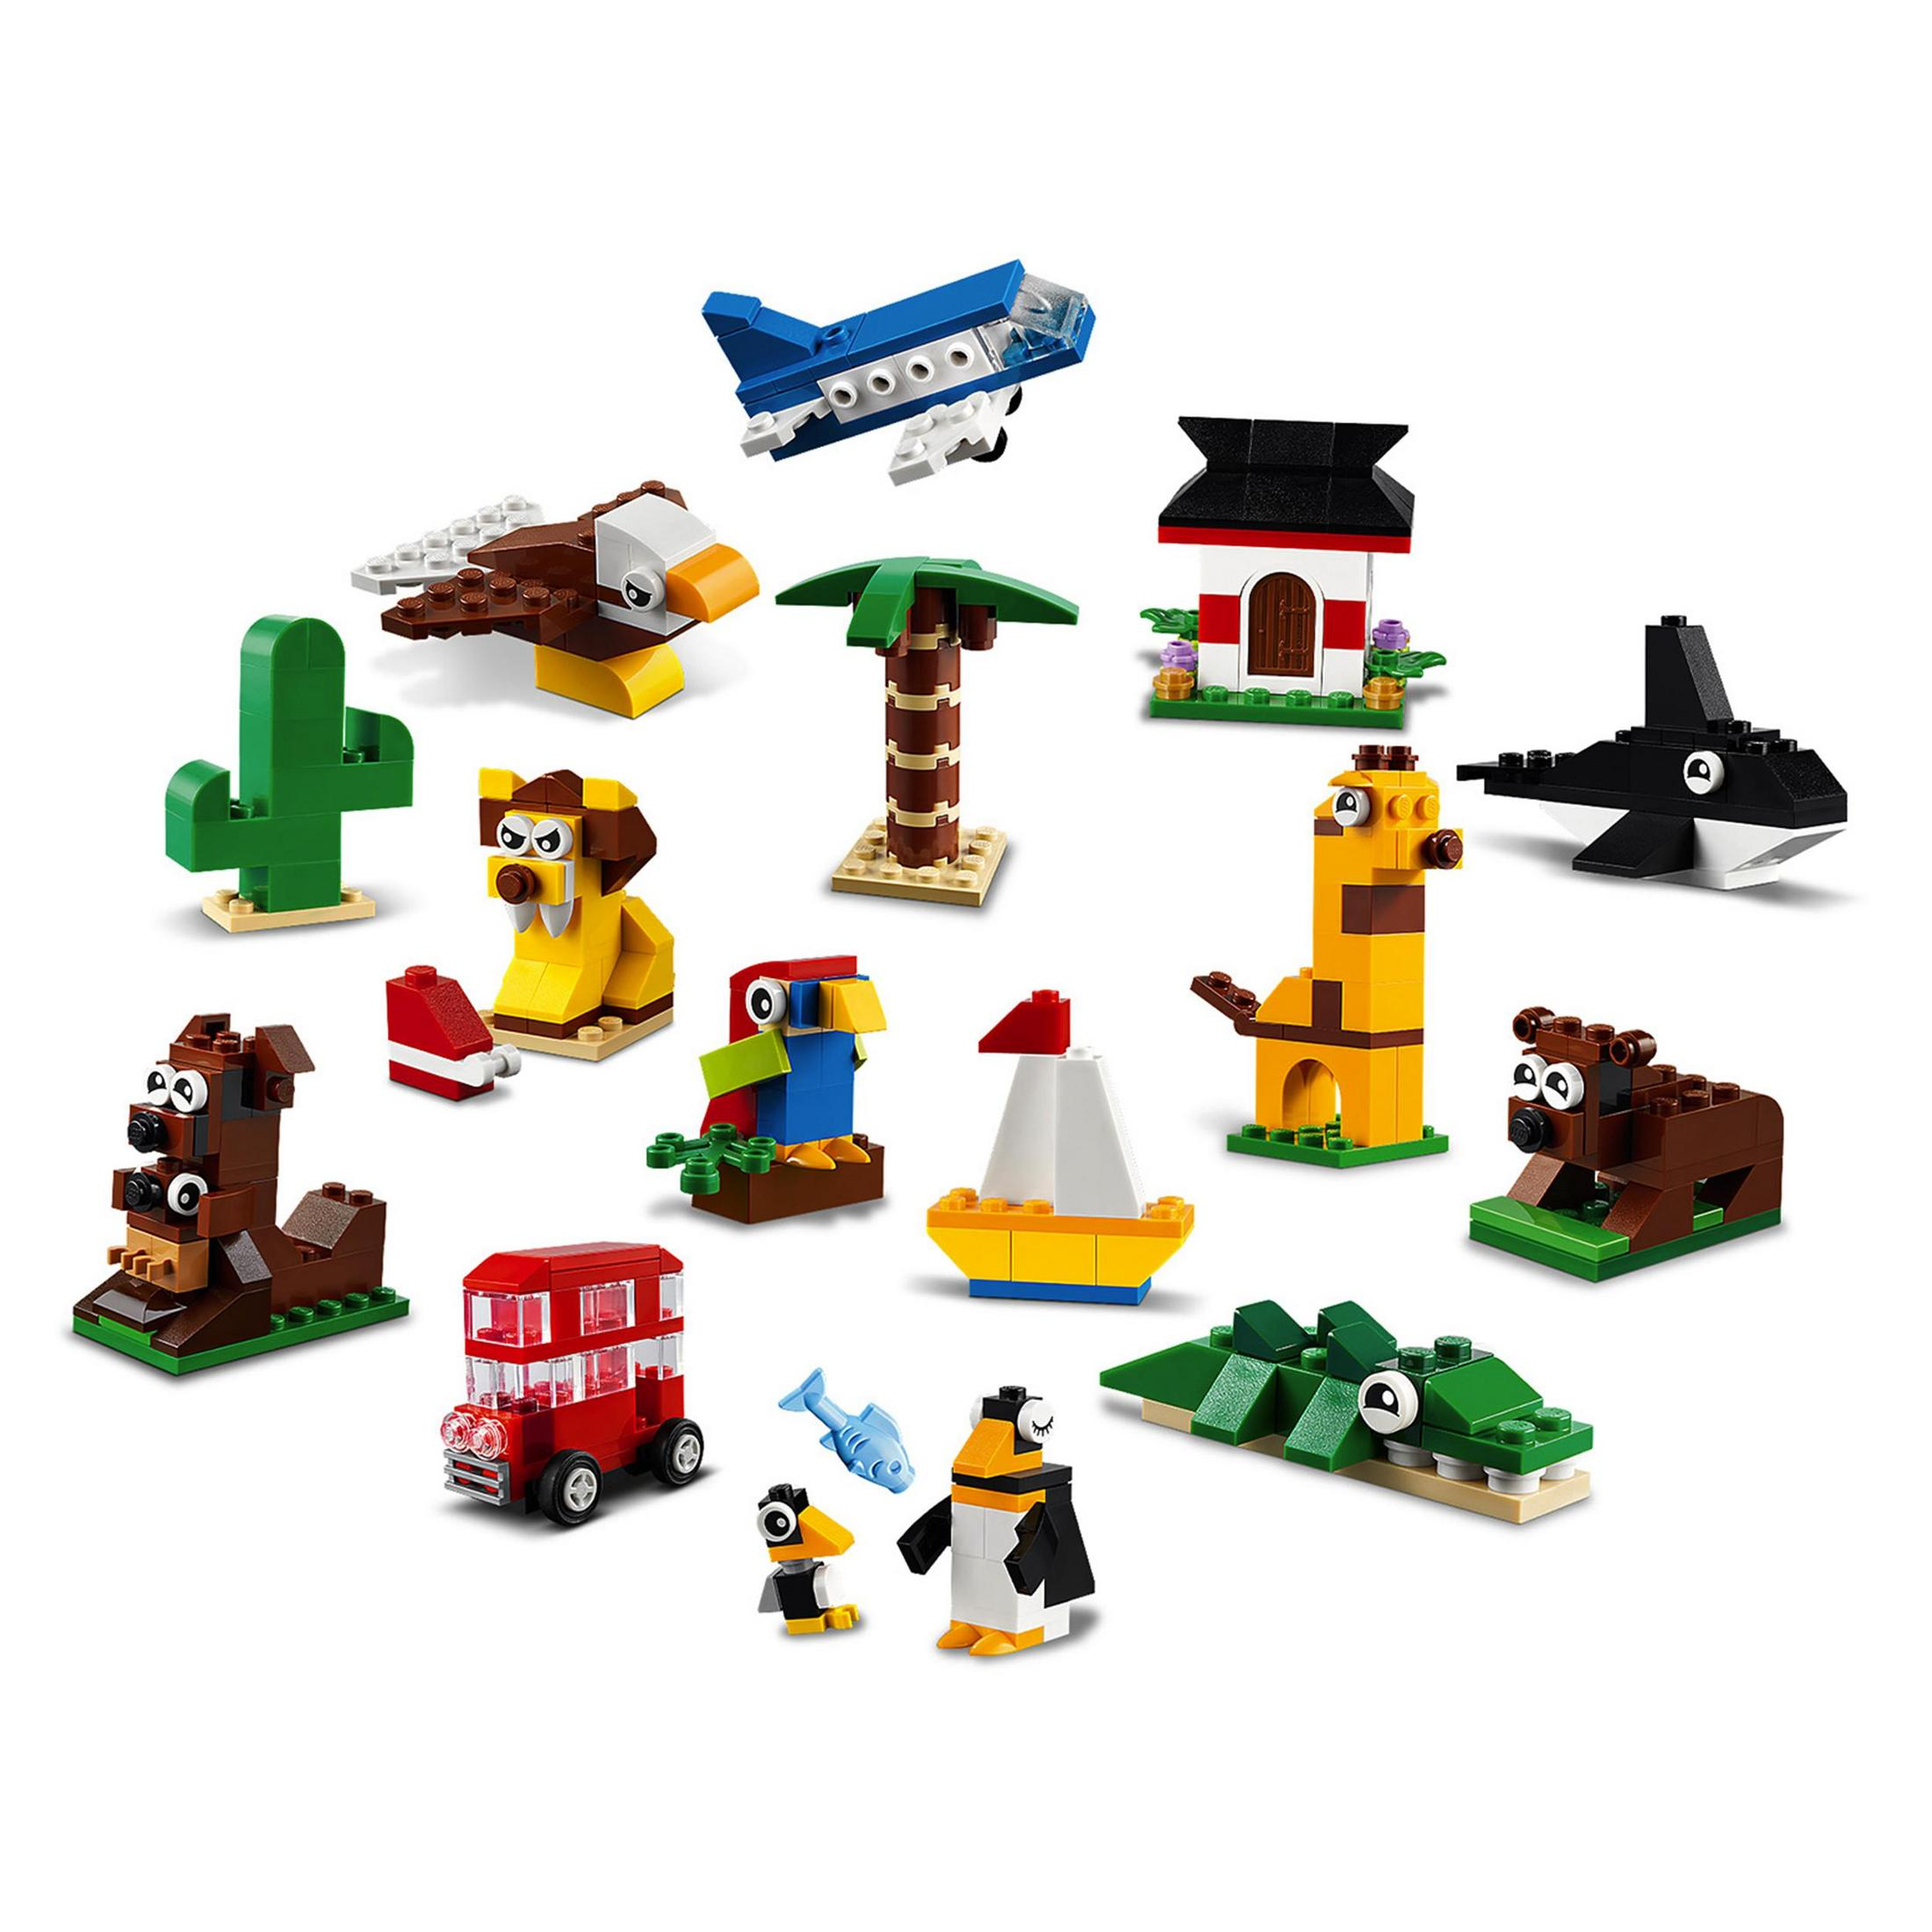 LEGO 11015 WELT EINMAL UM Montagespiel DIE